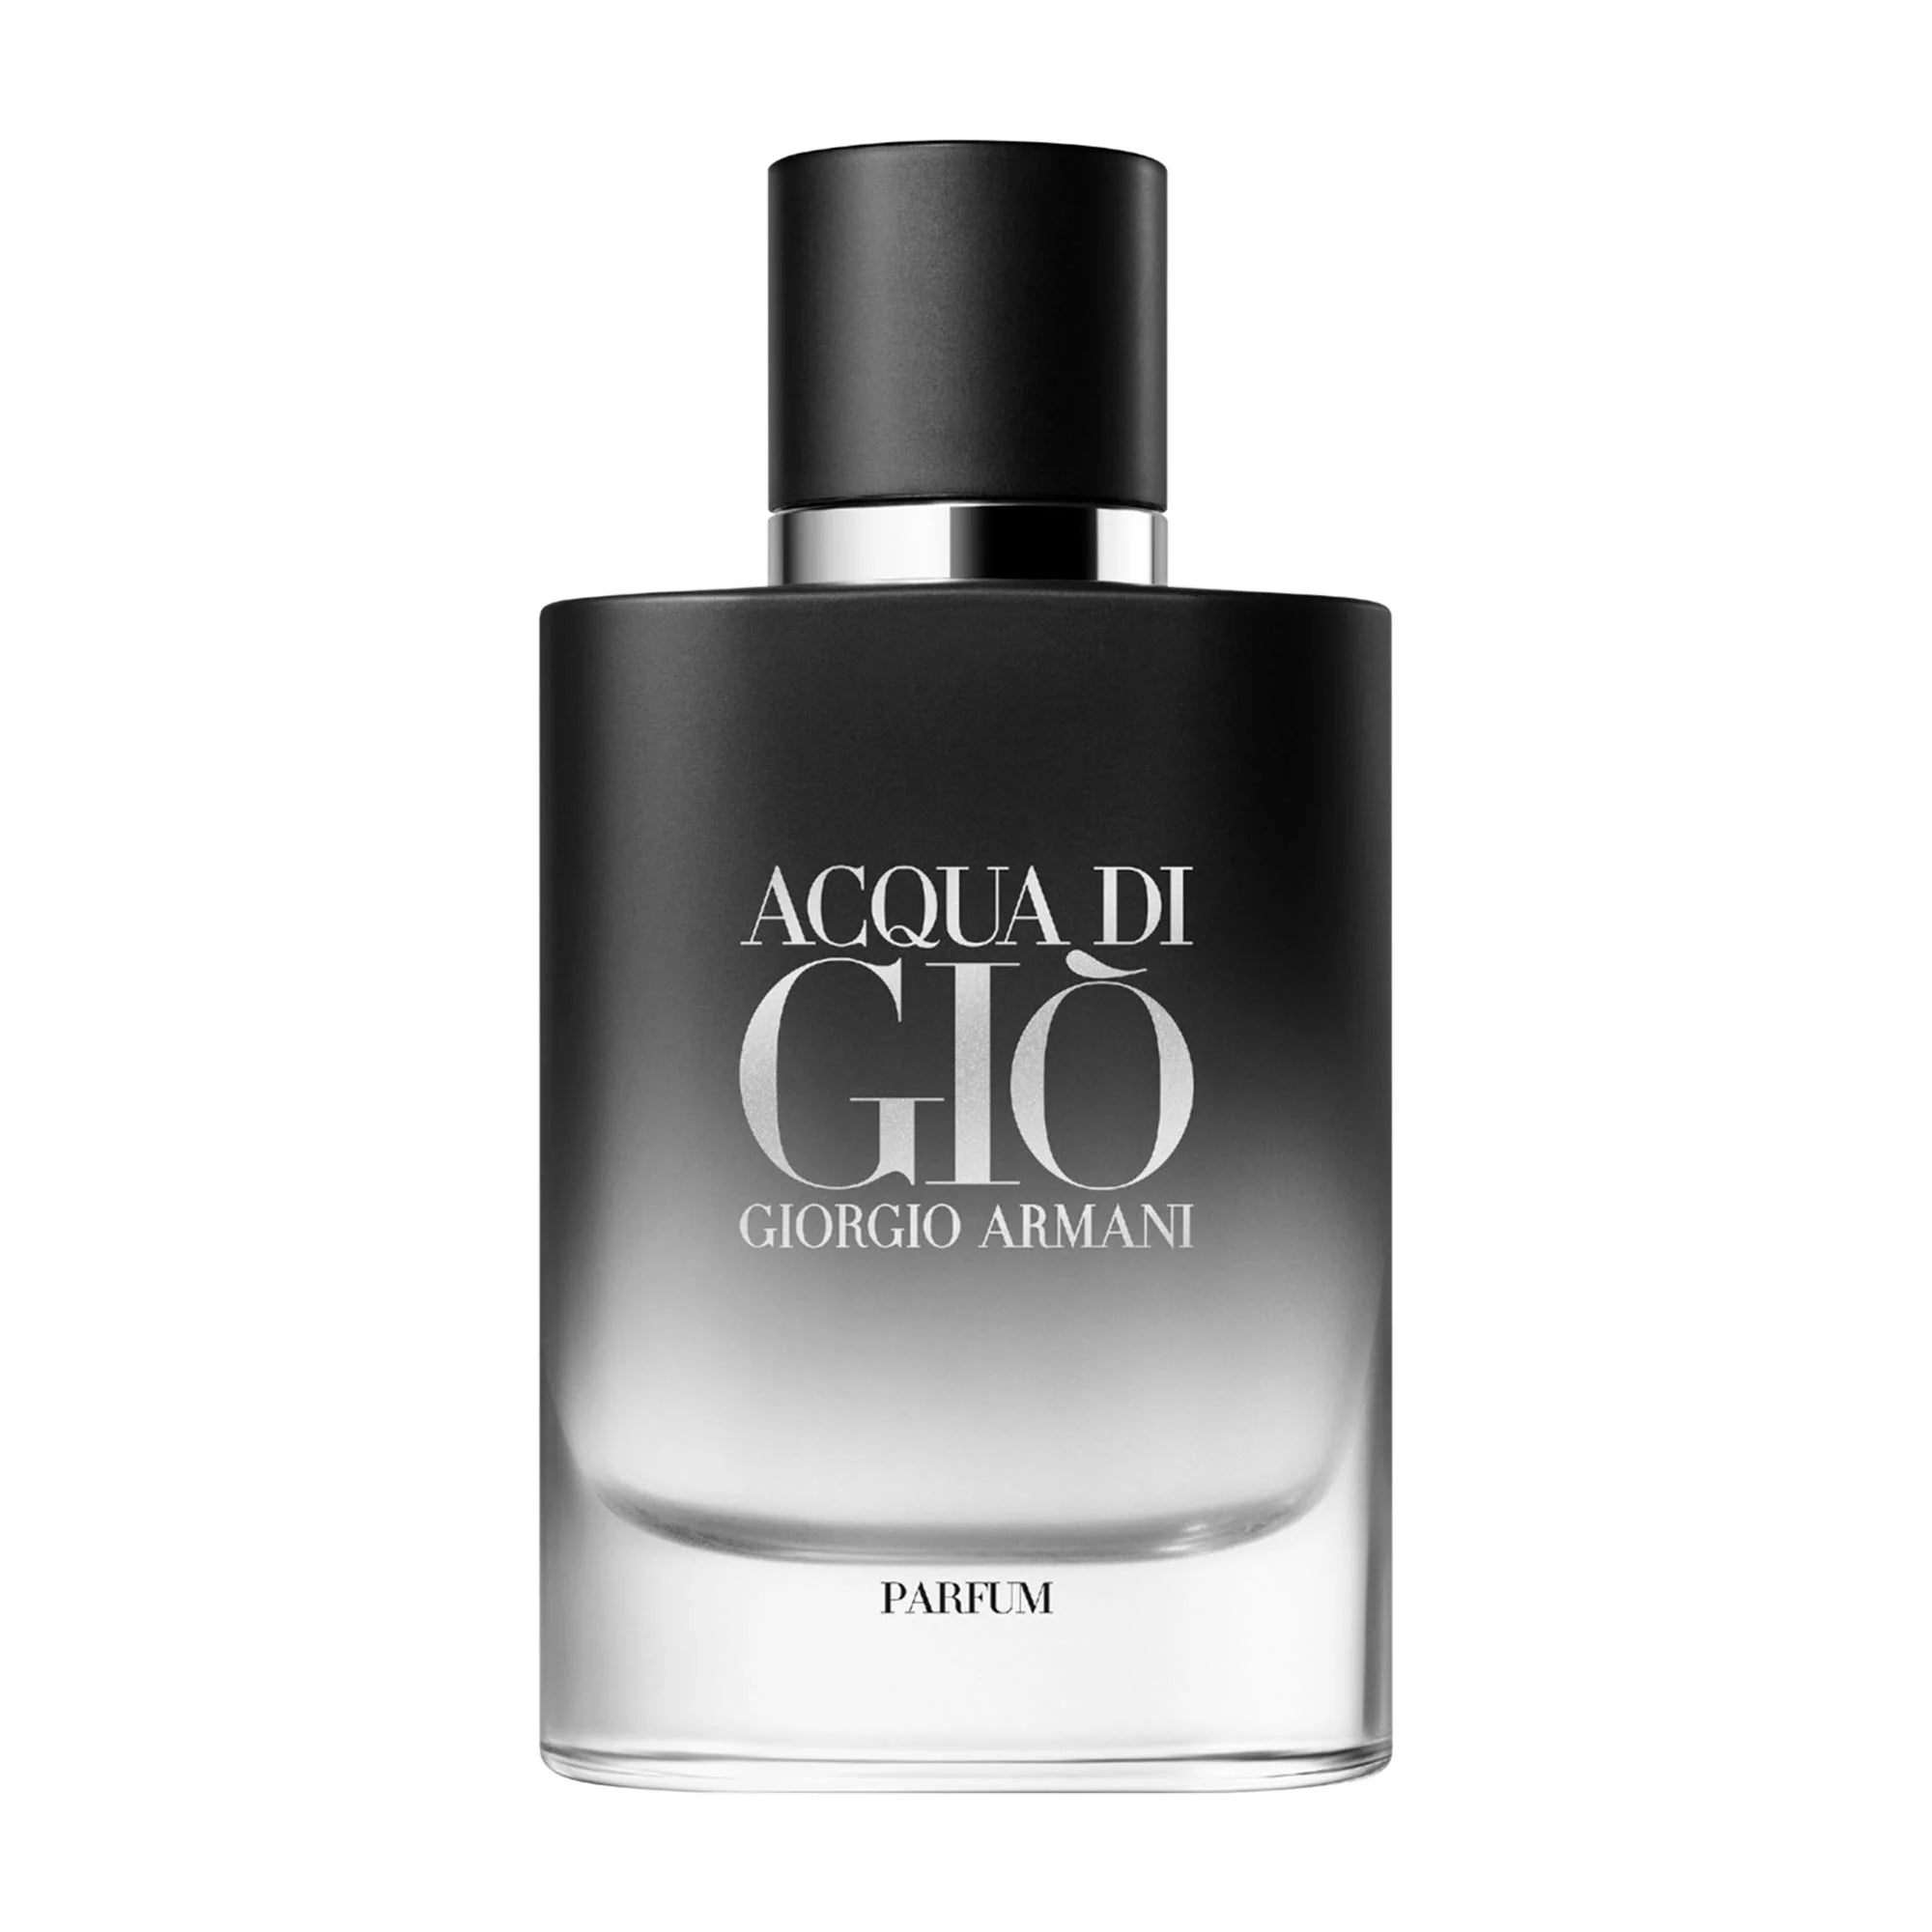 Perfume Giorgio Armani Acqua Di Gio Parfum (M) / 75 ml - 3614273906470- Prive Perfumes Honduras